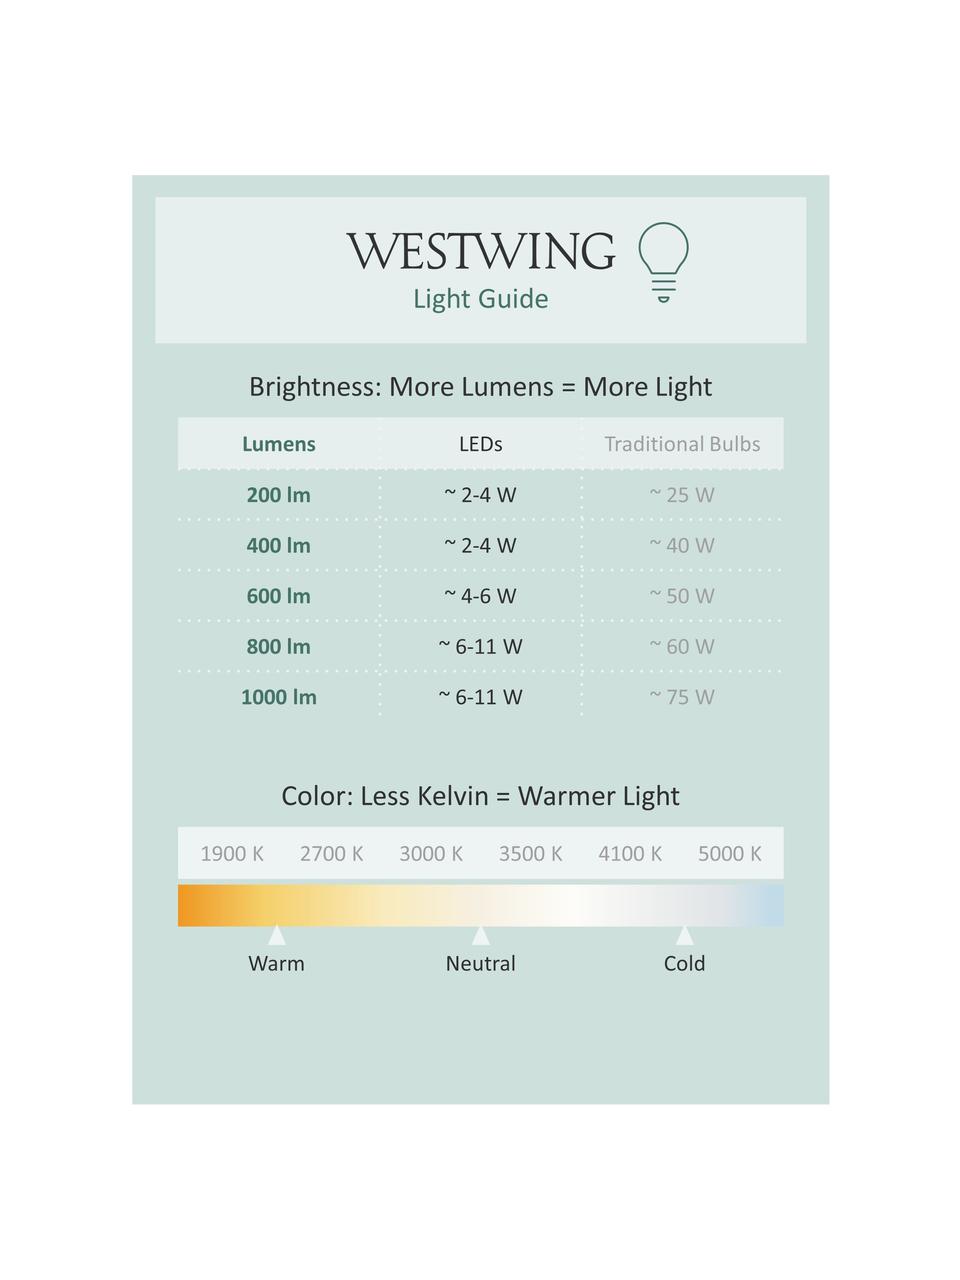 Applique LED verre opalescent salle de bains Clamp, Noir, blanc, larg. 9 x prof. 14 cm